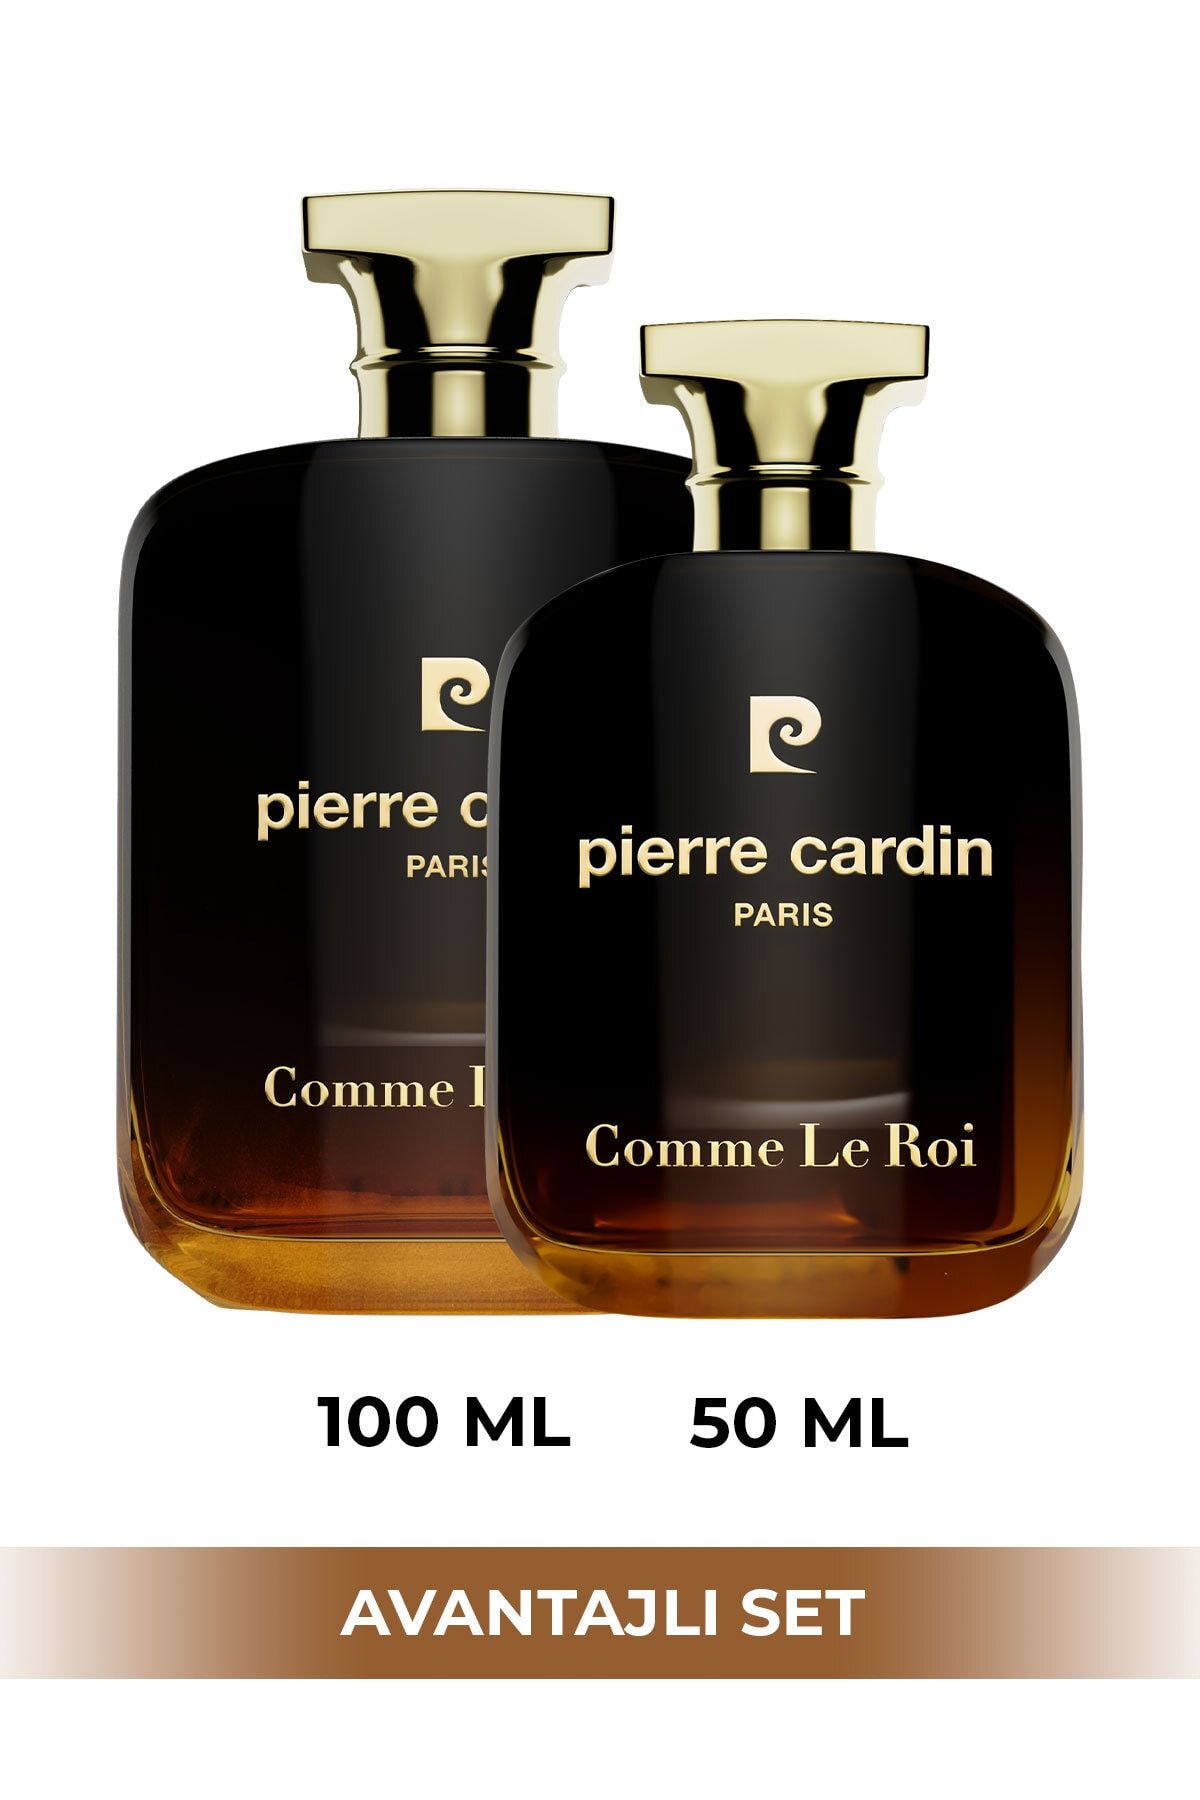 Pierre Cardin Comme Le Roi Edp 50 ml Ve 100 ml Ikili Erkek Parfüm Seti Stcc021204